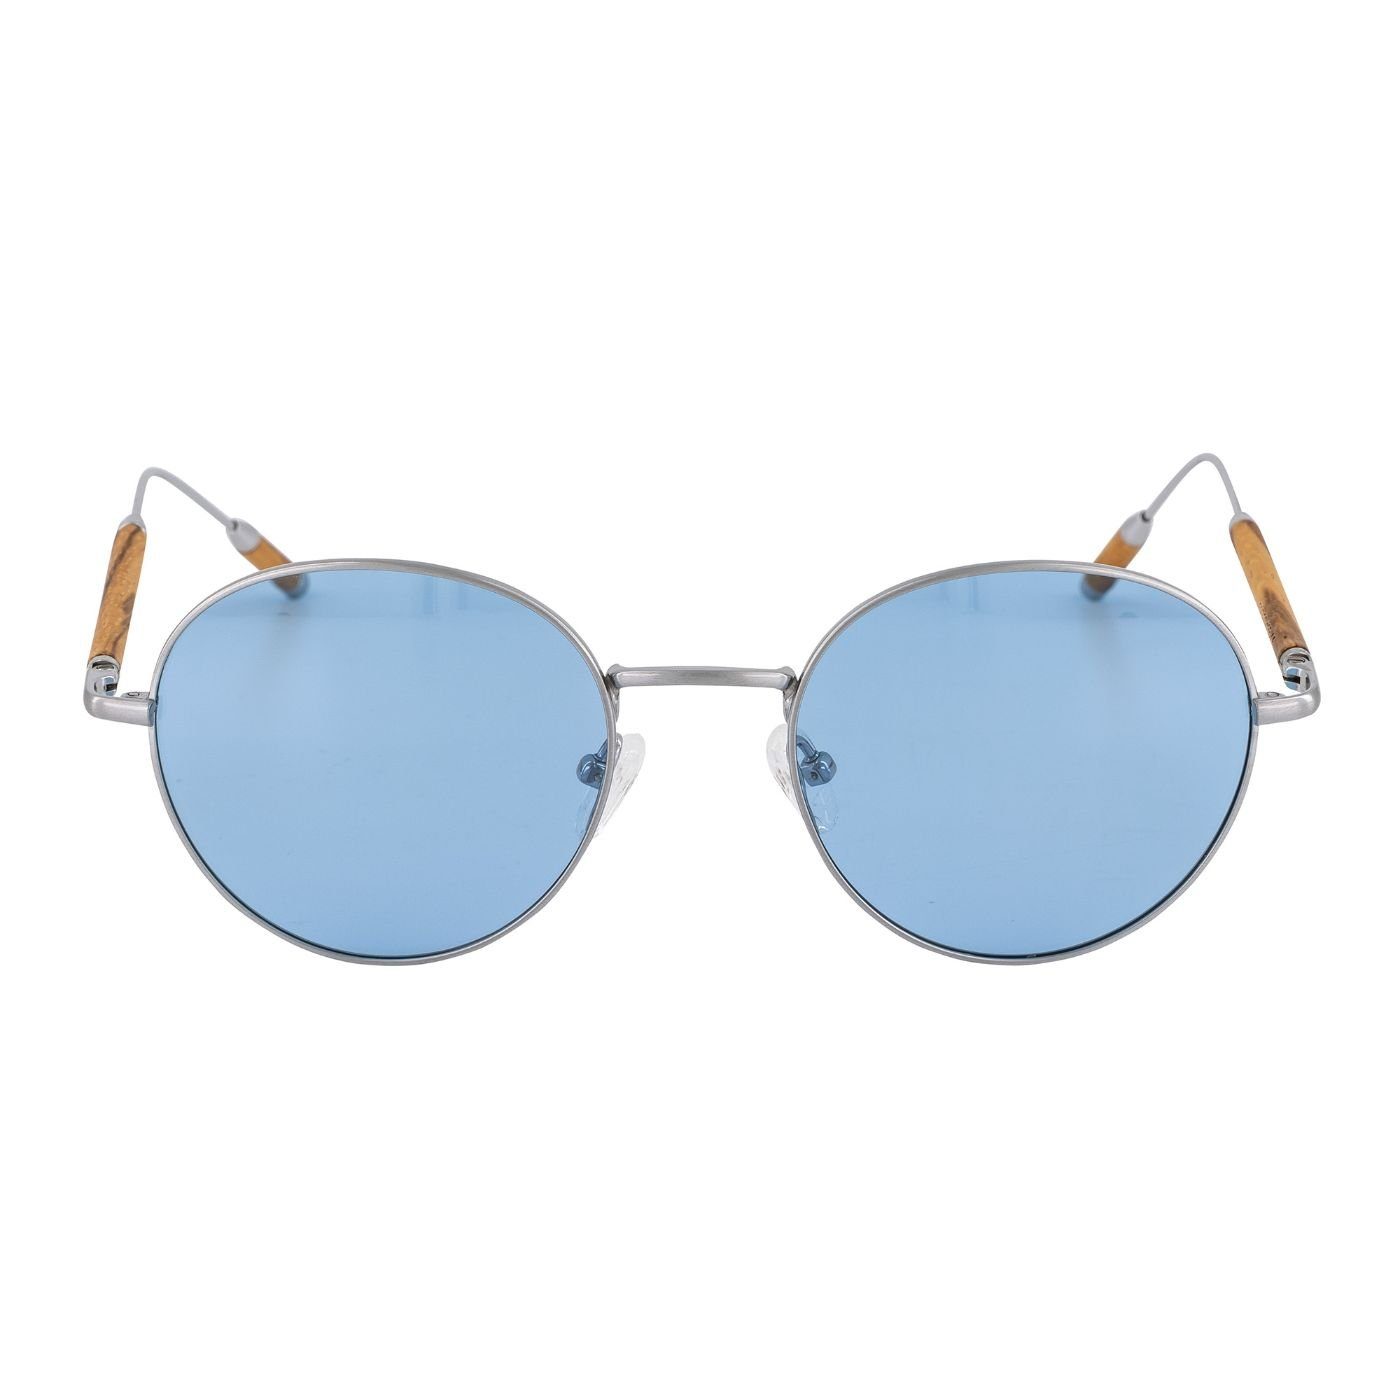 Holzelementen Zebrano Holz-Sonnenbrille Titan Woodenlove Titanbügel Etui) (Set, mit Brillenputztuch und Premium mit Sonnenbrille faltbarem